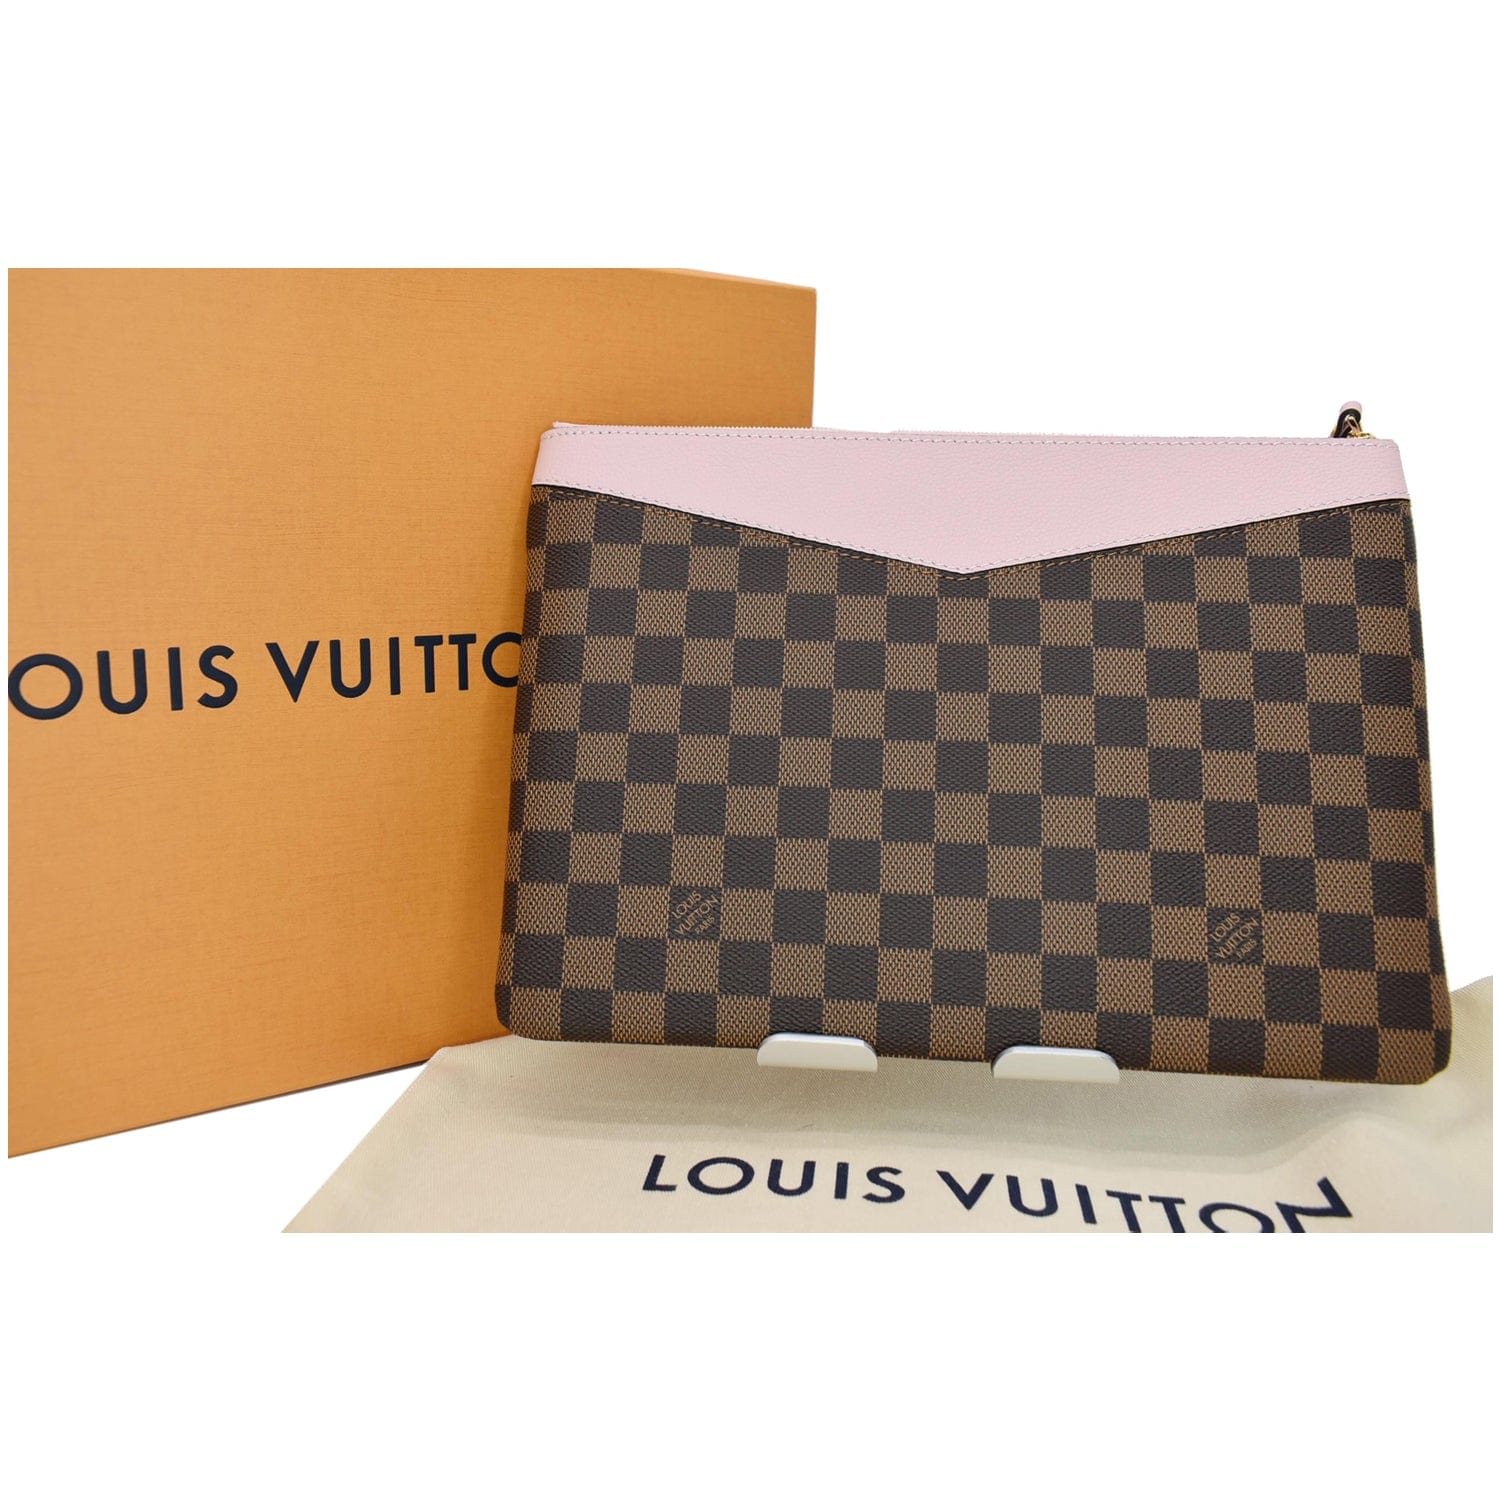 LOUIS VUITTON Daily Pouch Monogram Canvas Clutch Bag Rose Poudre - 15%